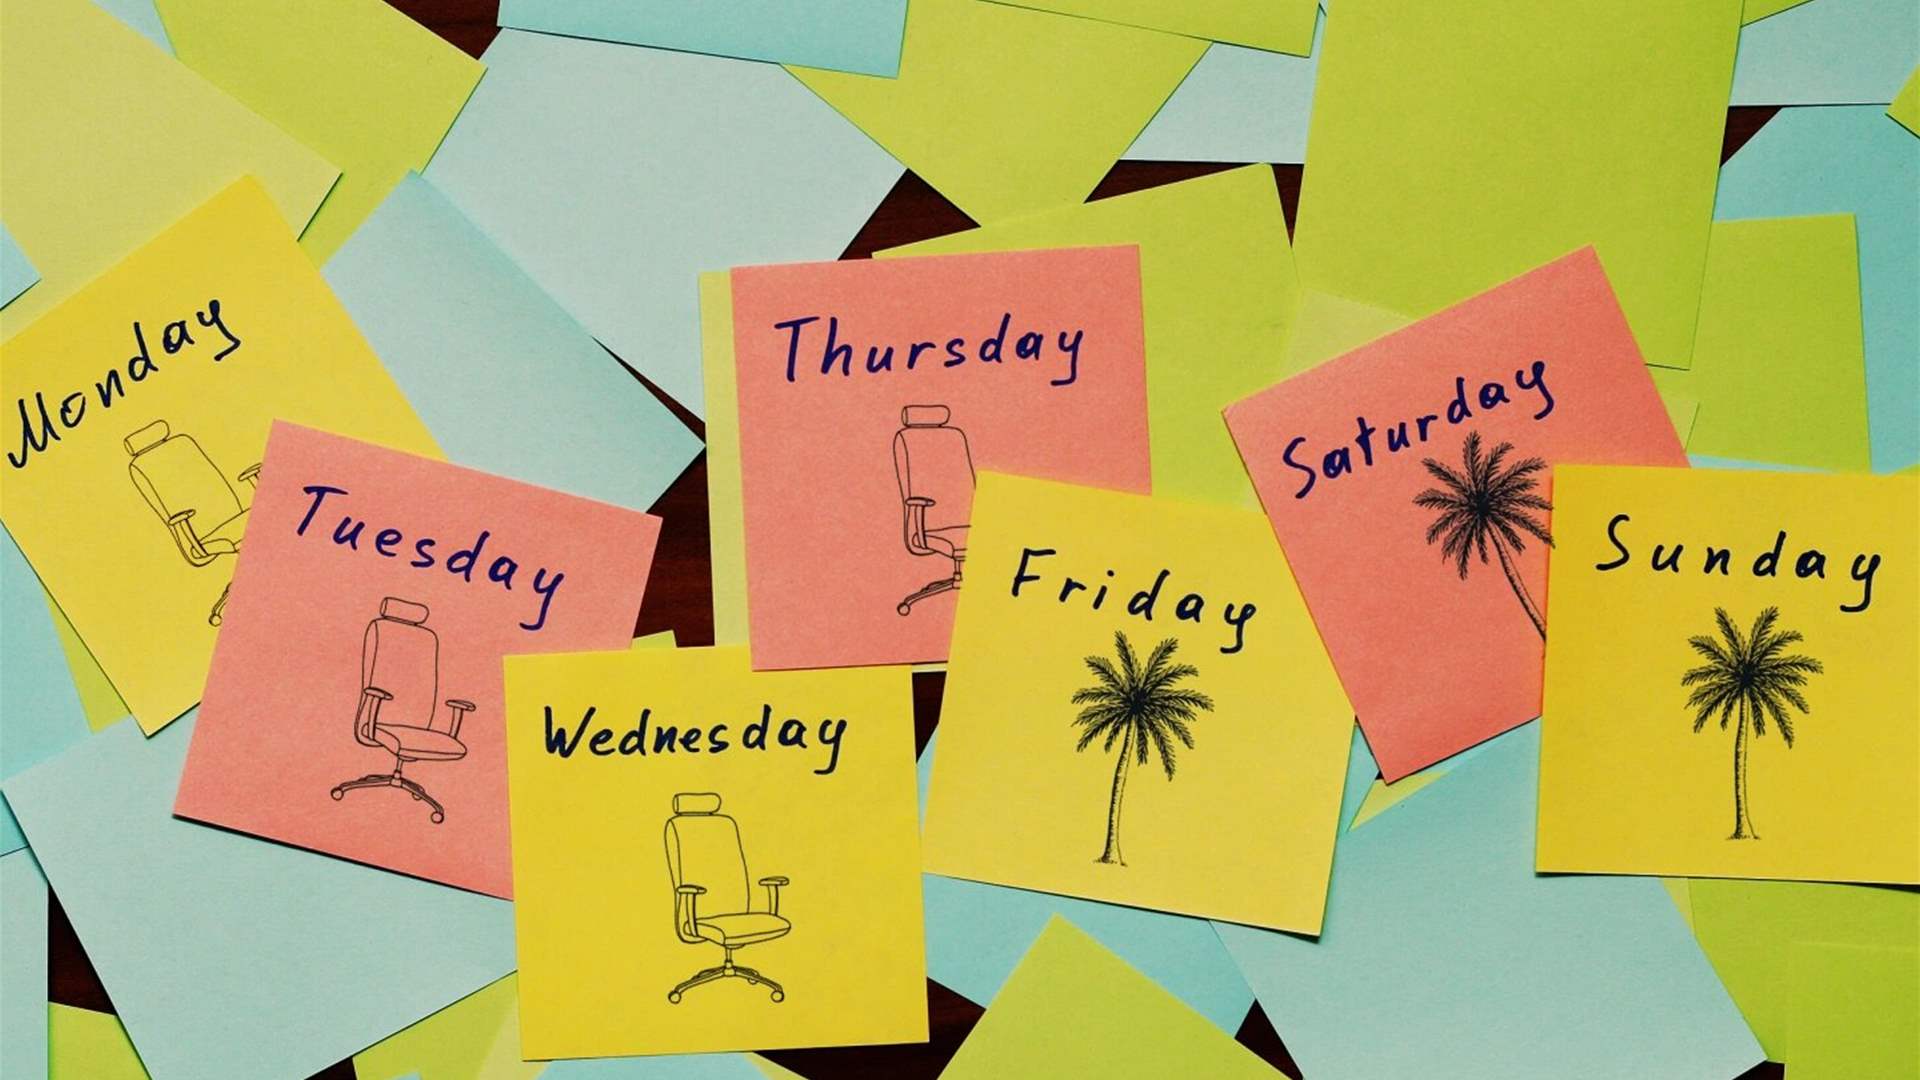 دراسة تكشف... كيف يؤثر العمل لـ4 أيام في الأسبوع على رفاهية الموظف؟